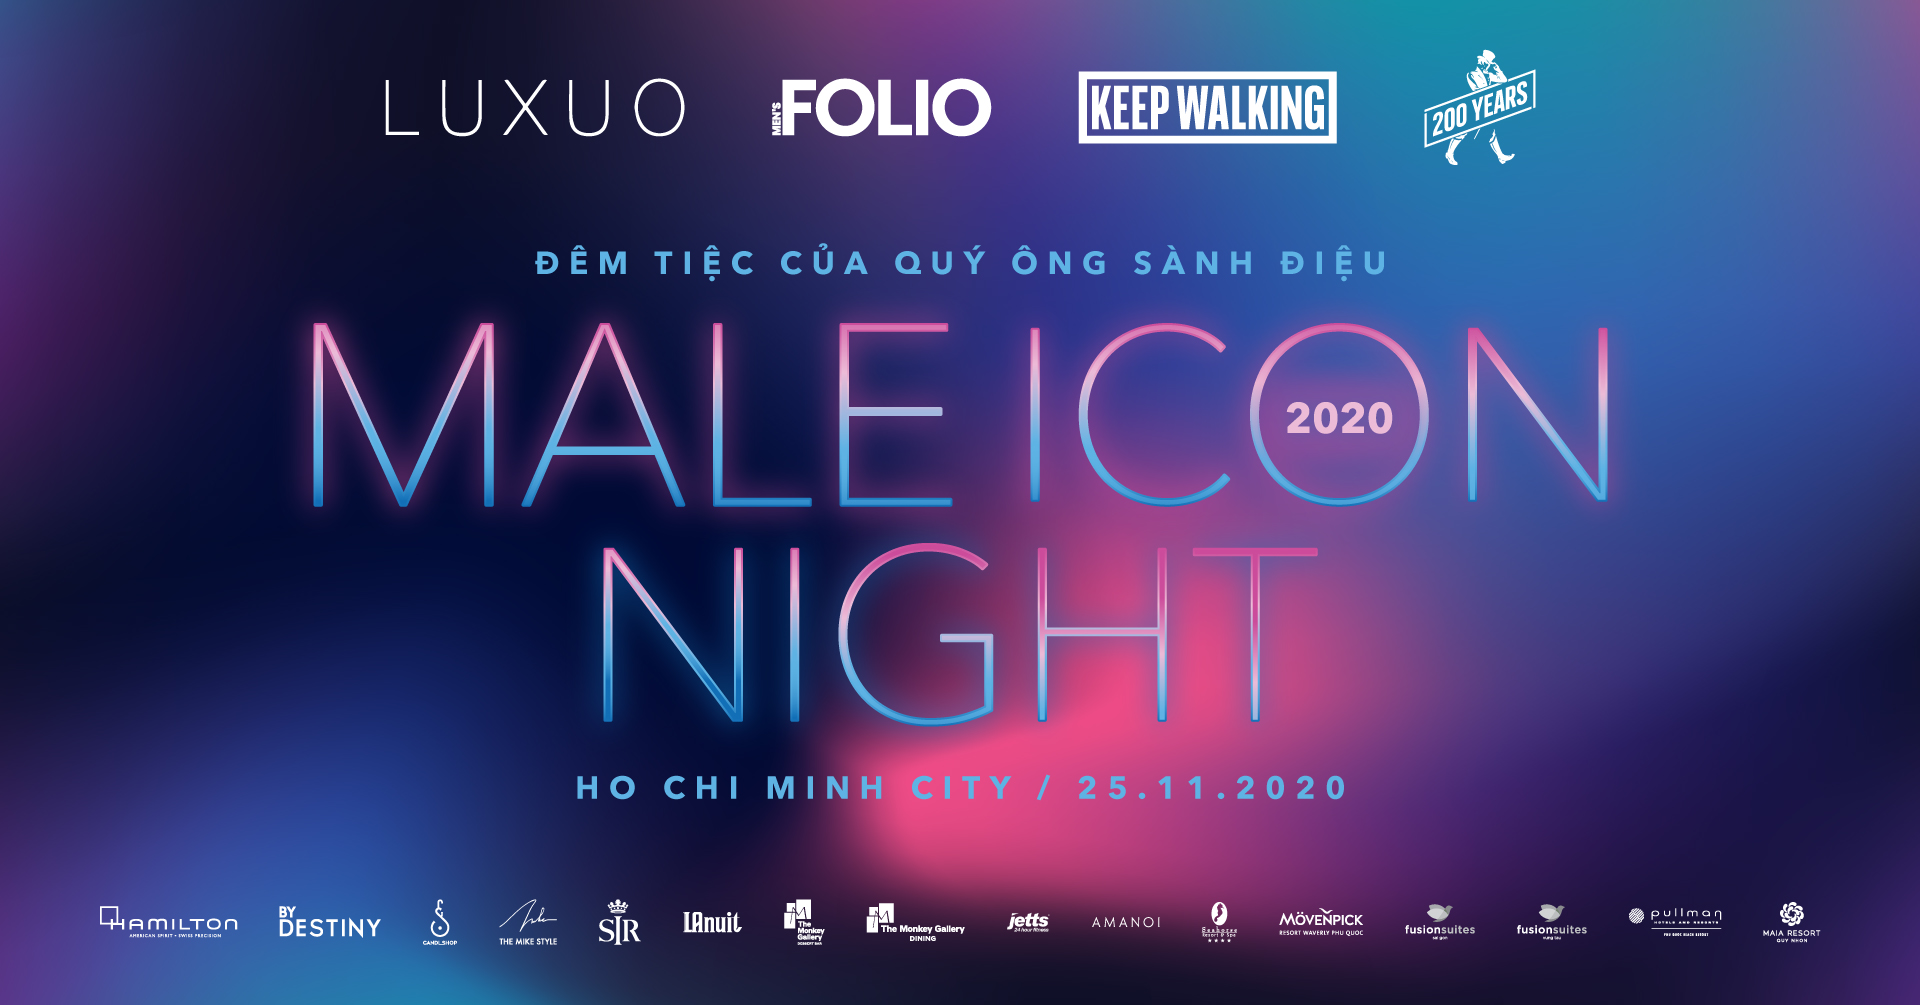 Male ICON Night 2020 chính thức khởi động: Đêm tiệc của quý ông sành điệu